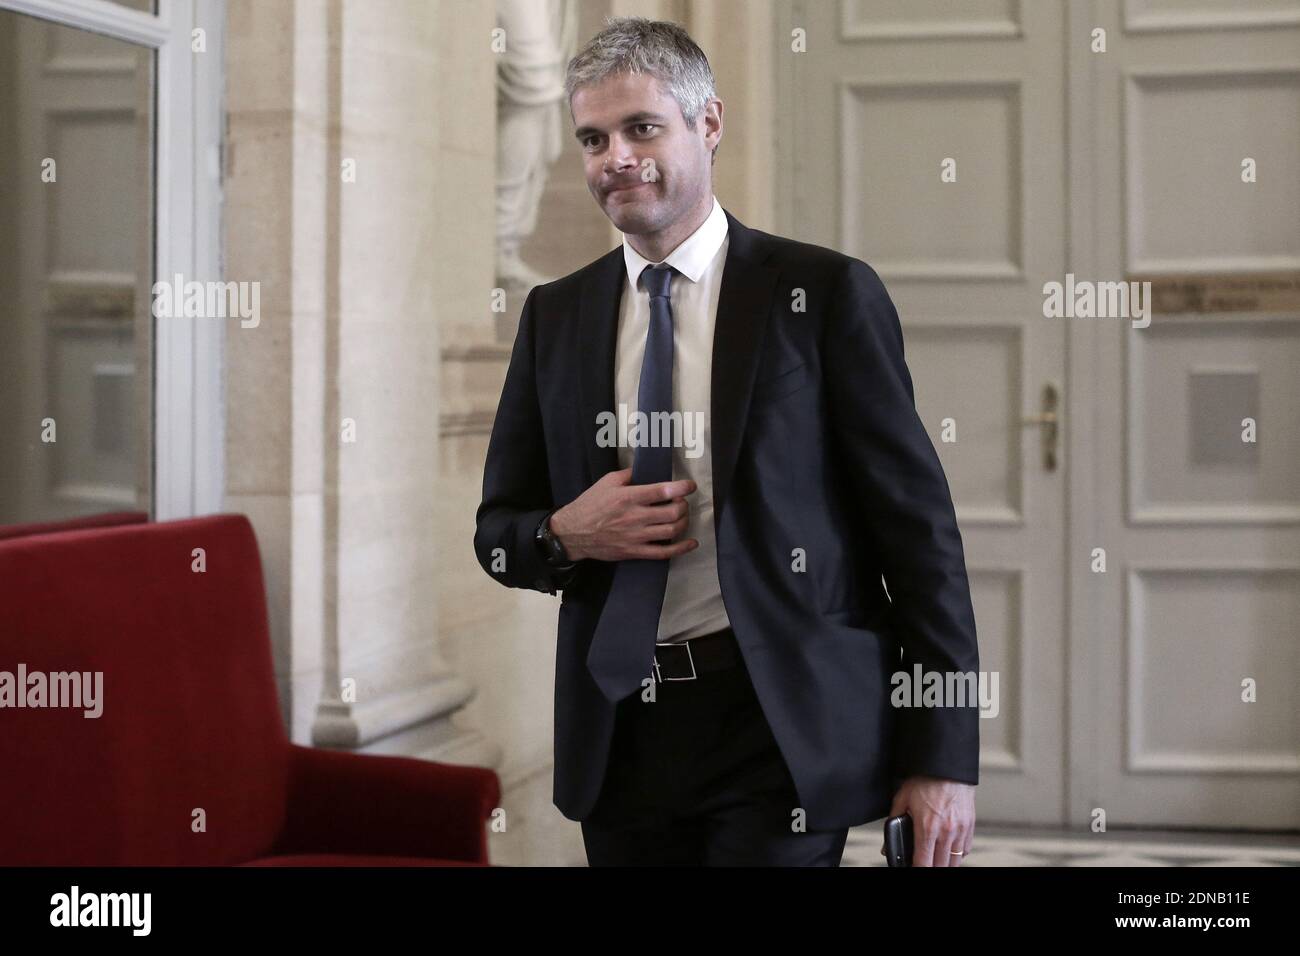 Le député de l'UMP, Laurent Wauquiez, est photographié aux quatre colonnes lors de l'heure des questions à l'Assemblée nationale à Paris, en France, le 27 juin 2015. Photo de Stephane Lemouton/ABACAPRESS.COM Banque D'Images